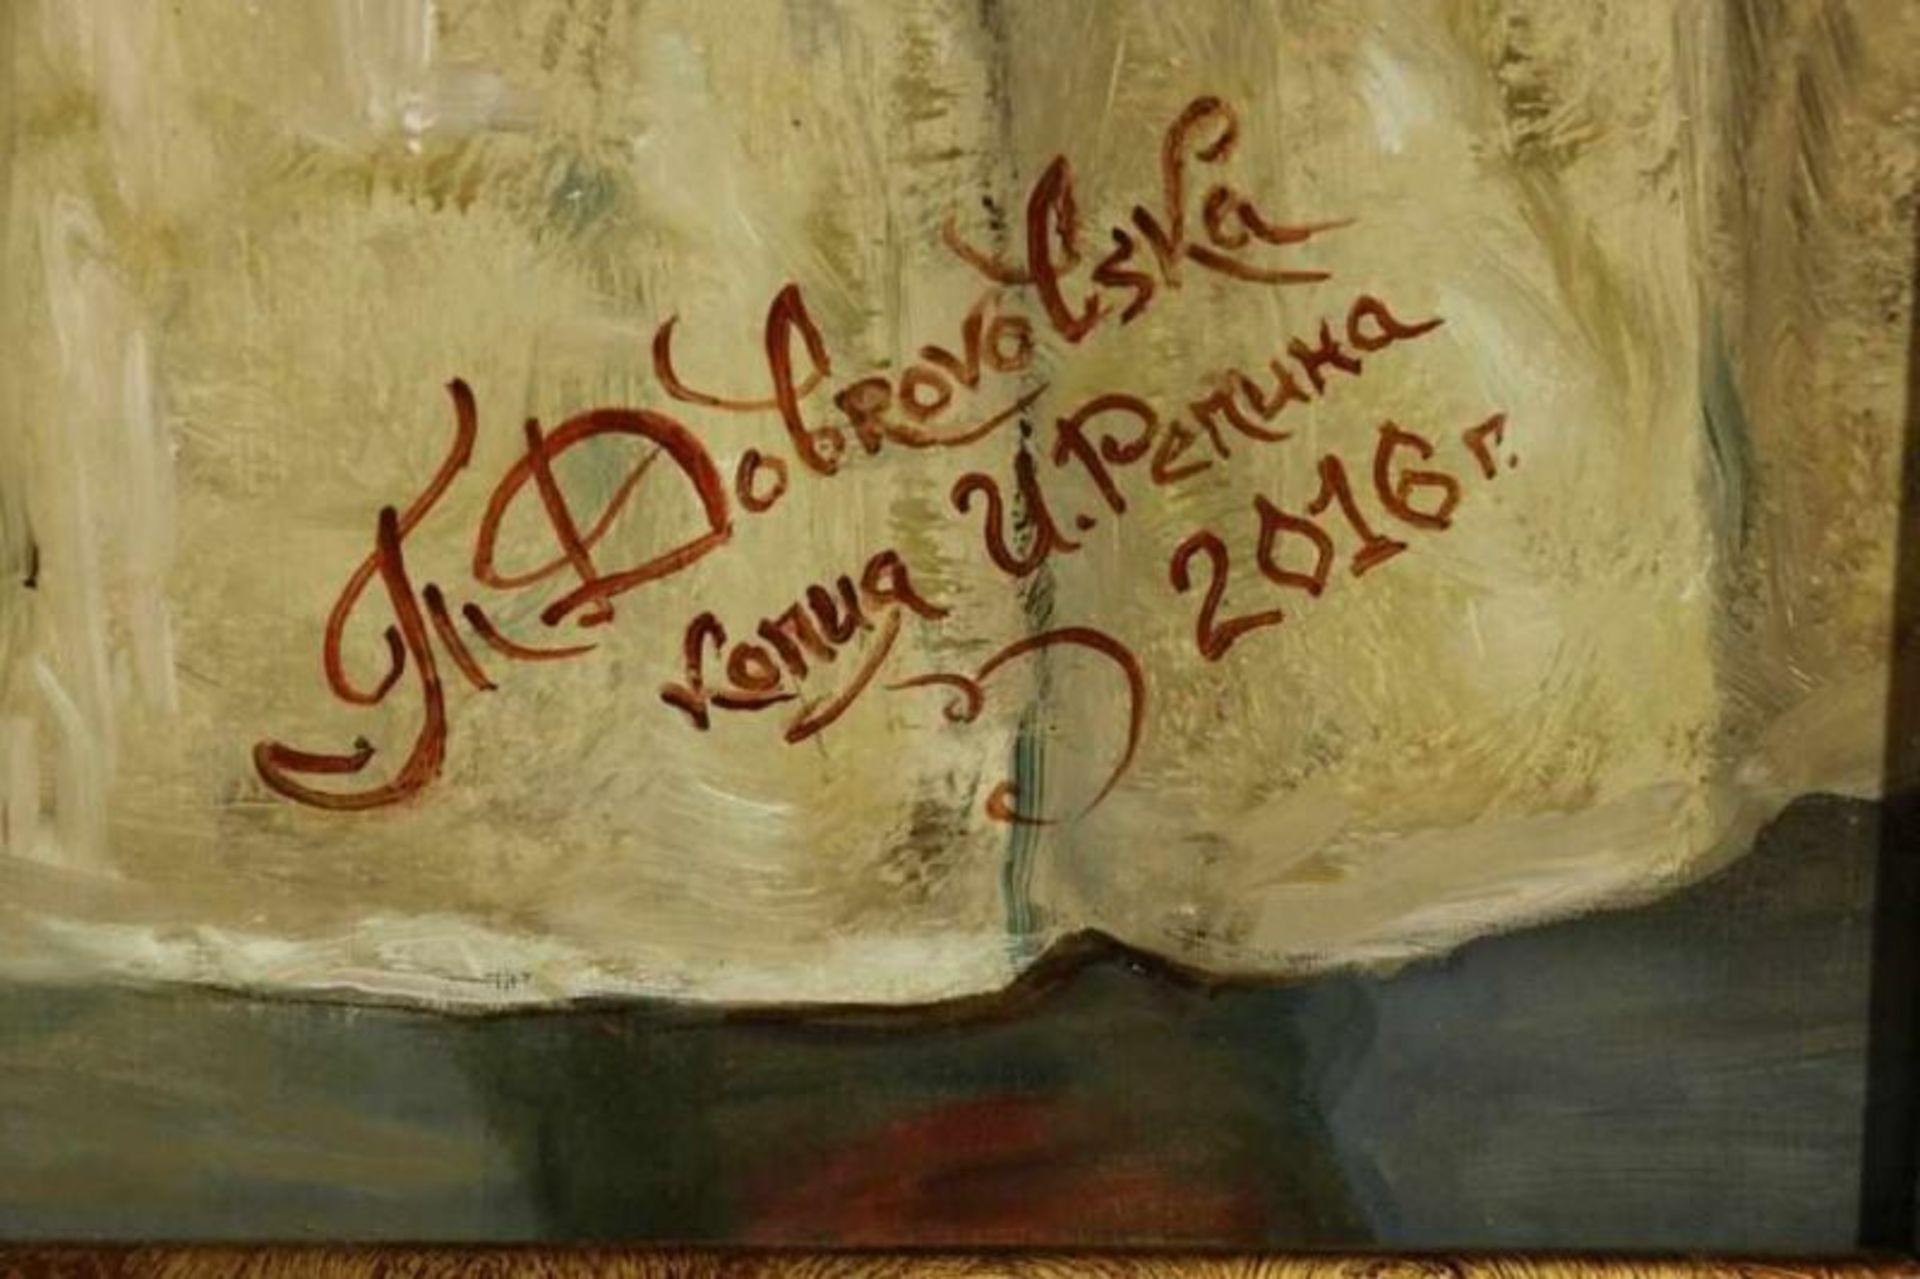 DOBROVOLSKA, ges. en gedat. 2016, De Zaporozje-Kozakken schrijven de Turkse sultan een brief, - Bild 3 aus 4